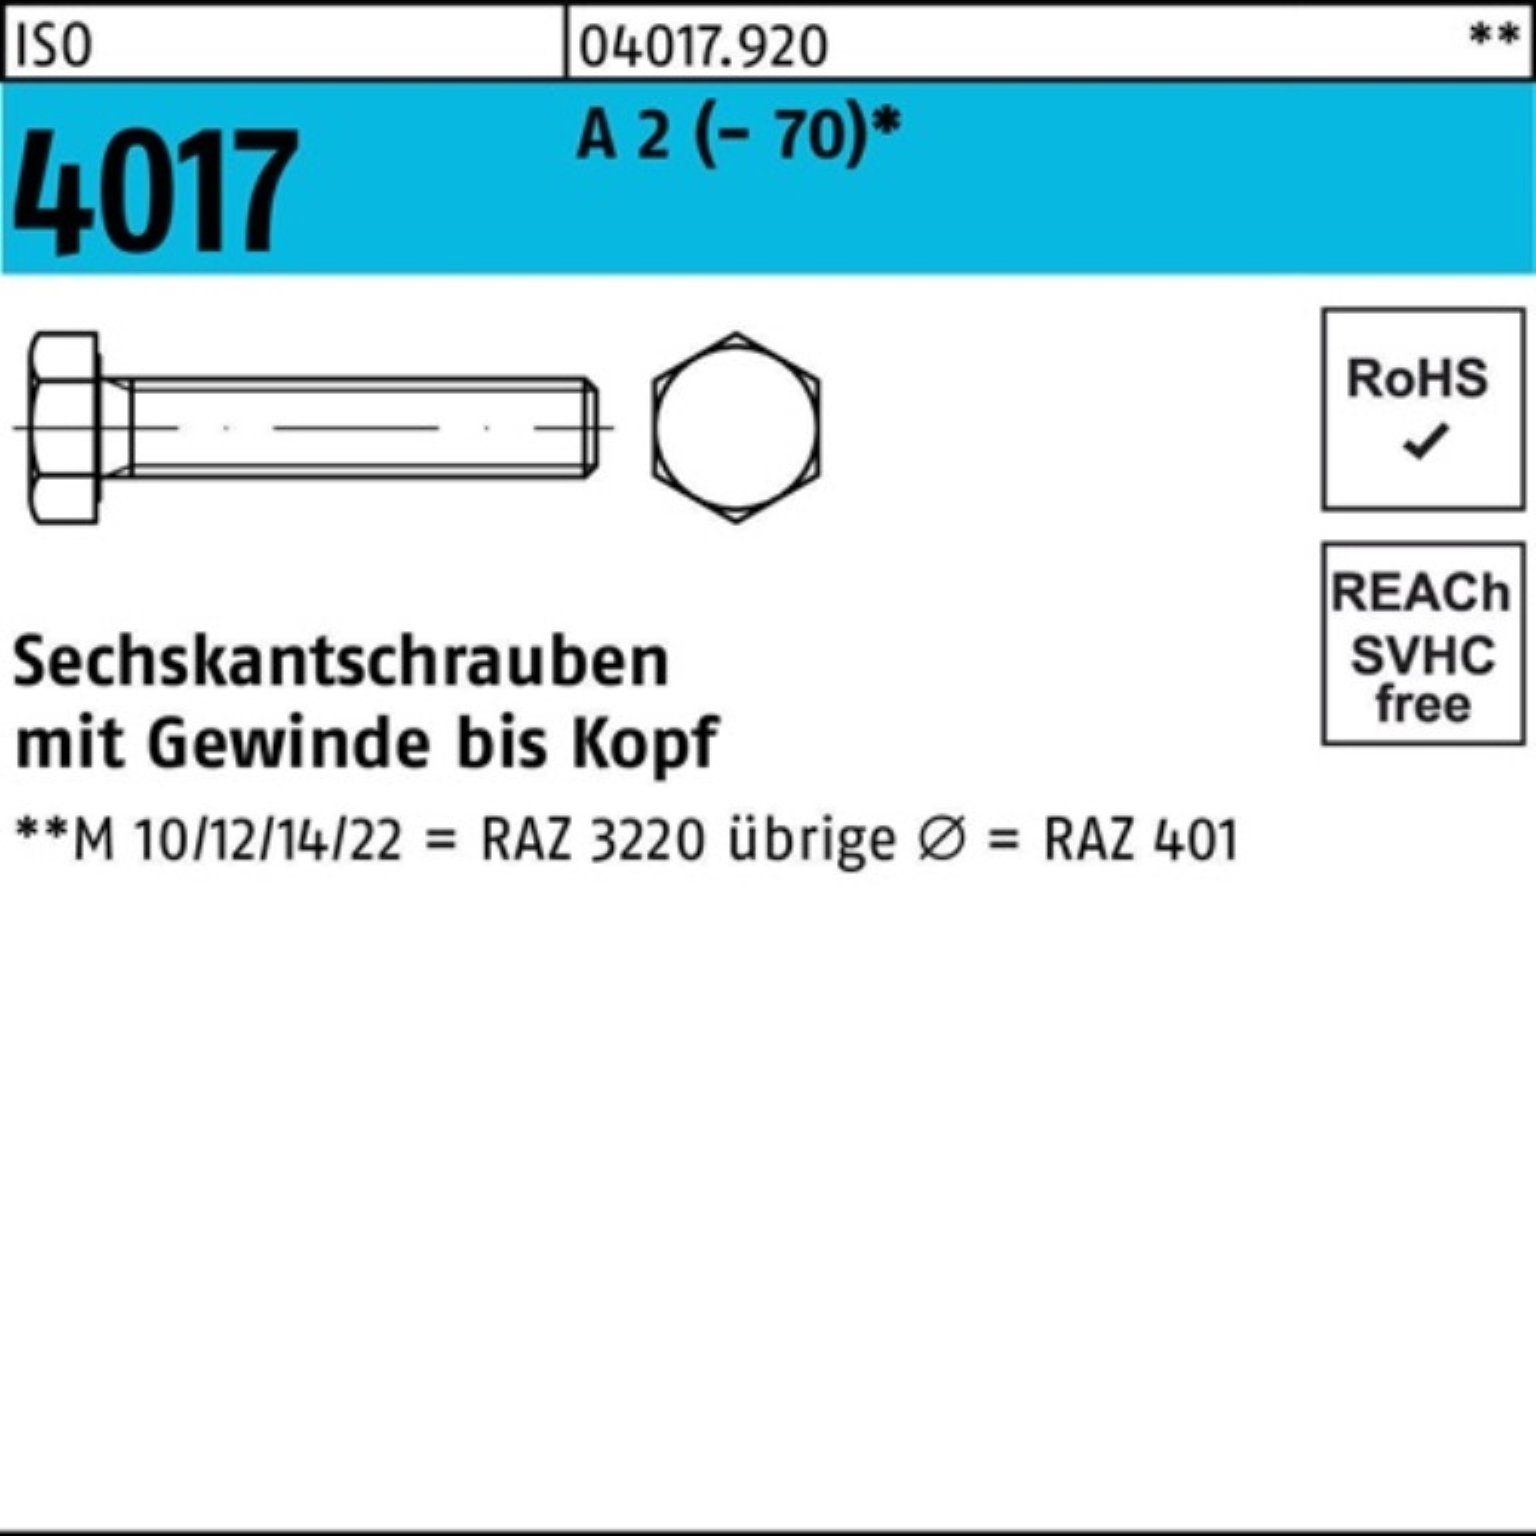 Bufab Sechskantschraube 100er Pack Sechskantschraube ISO 4017 VG M18x 30 A 2 (70) 25 Stück